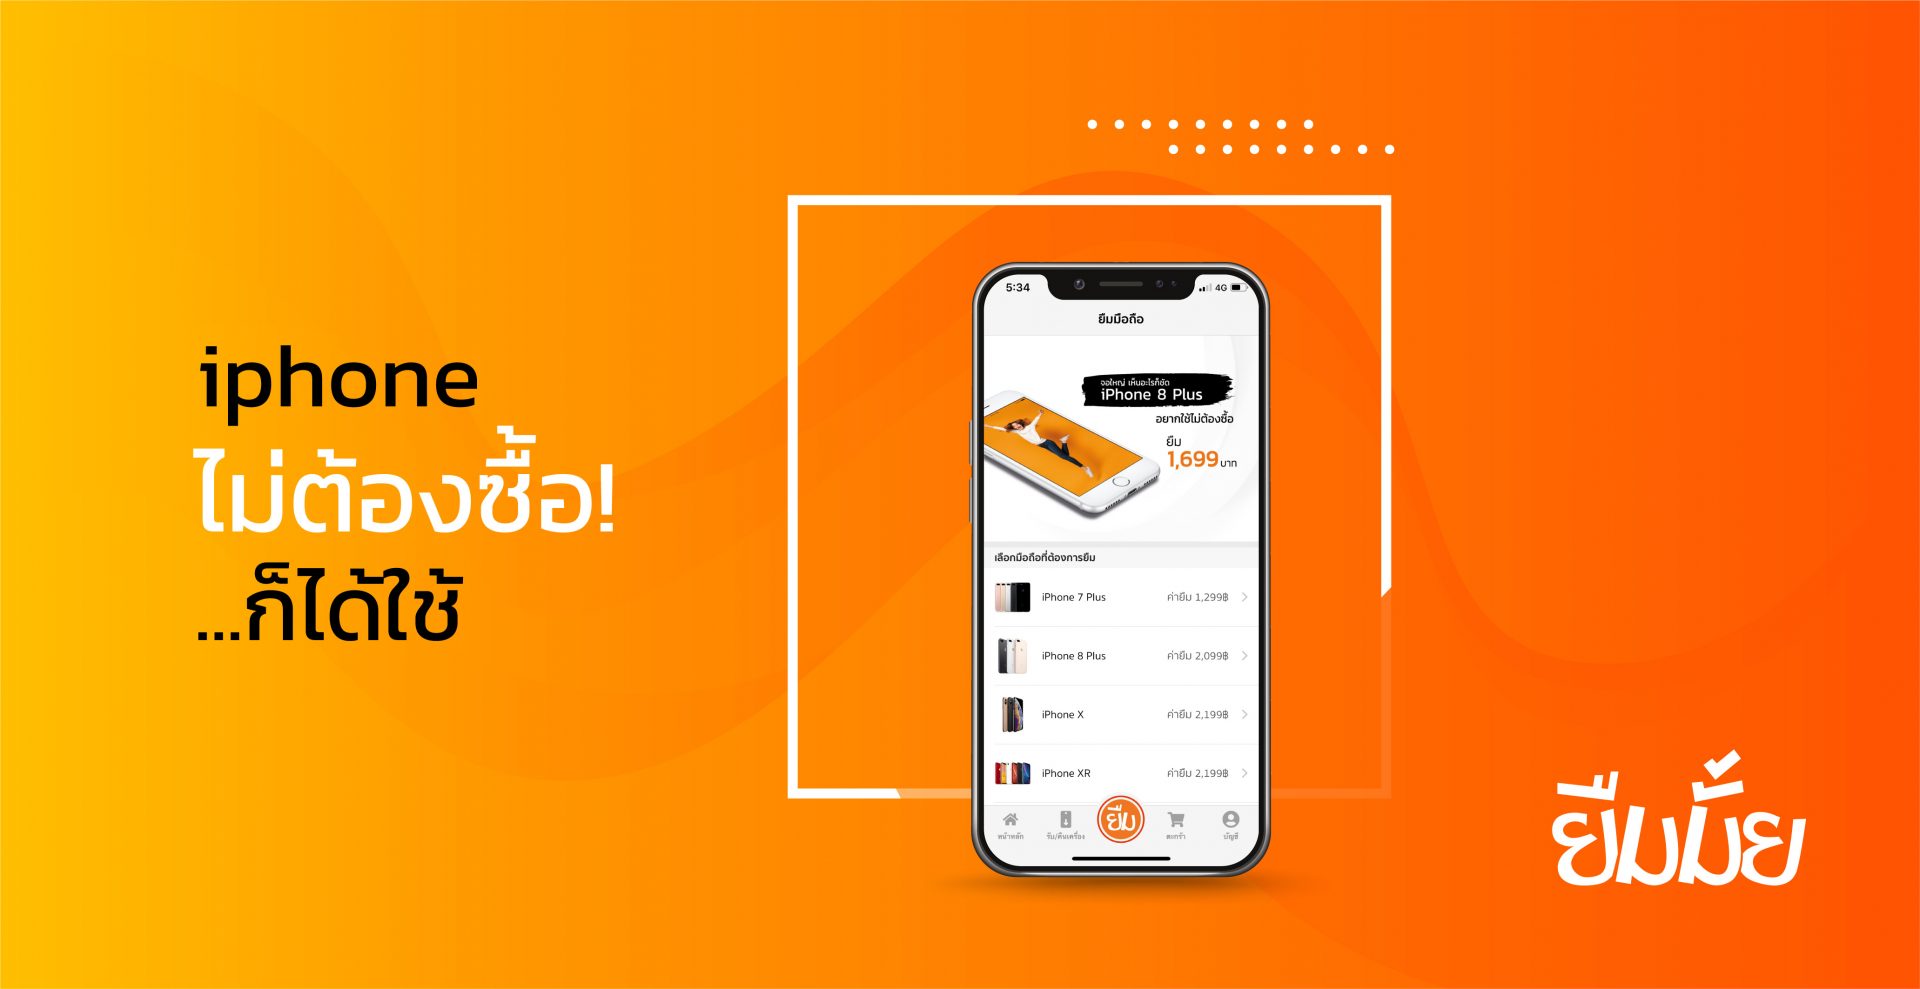 เปิดตัว “ยืมมั้ย” บริการยืมมือถือครั้งแรกในไทย เปลี่ยนการ “ซื้อ iPhone” เป็น “ยืม” ที่จ่ายถูกกว่า